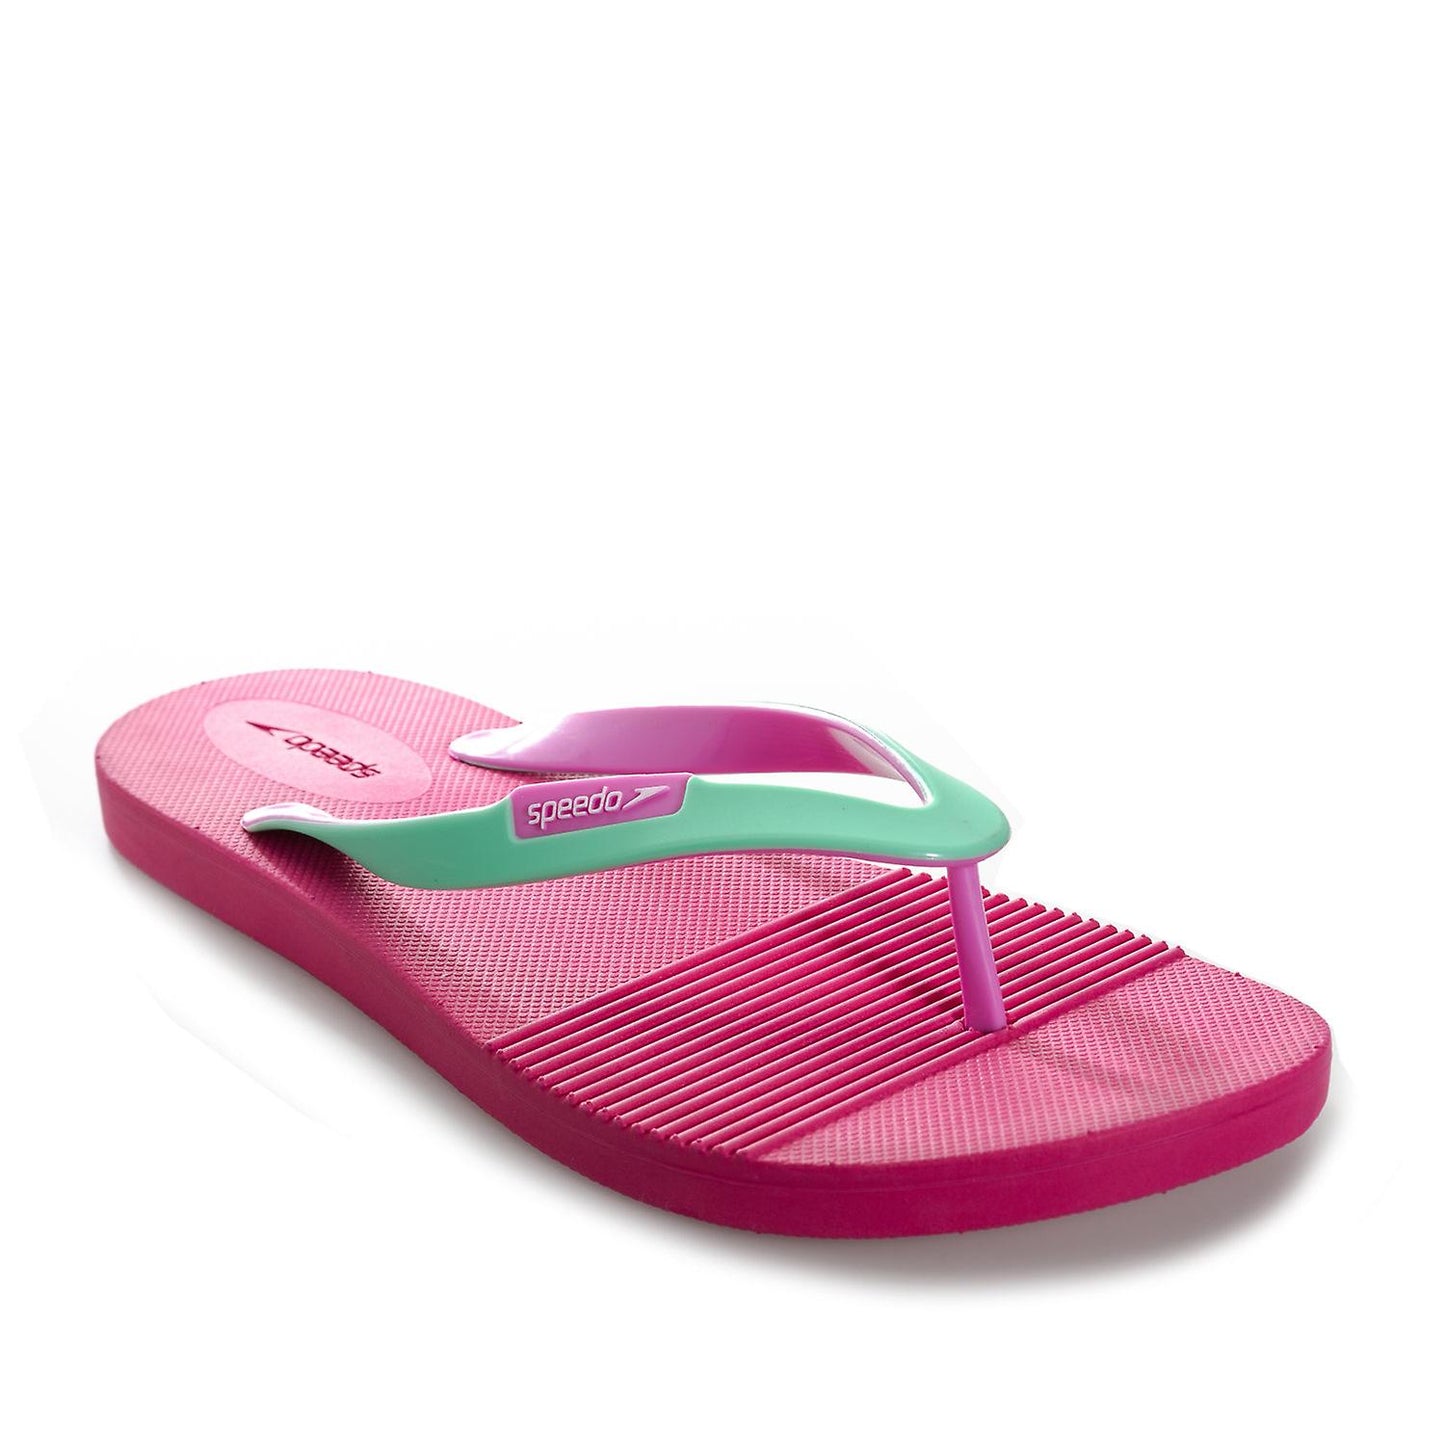 Speedo Saturate II pink and green ladies' thong flip flops